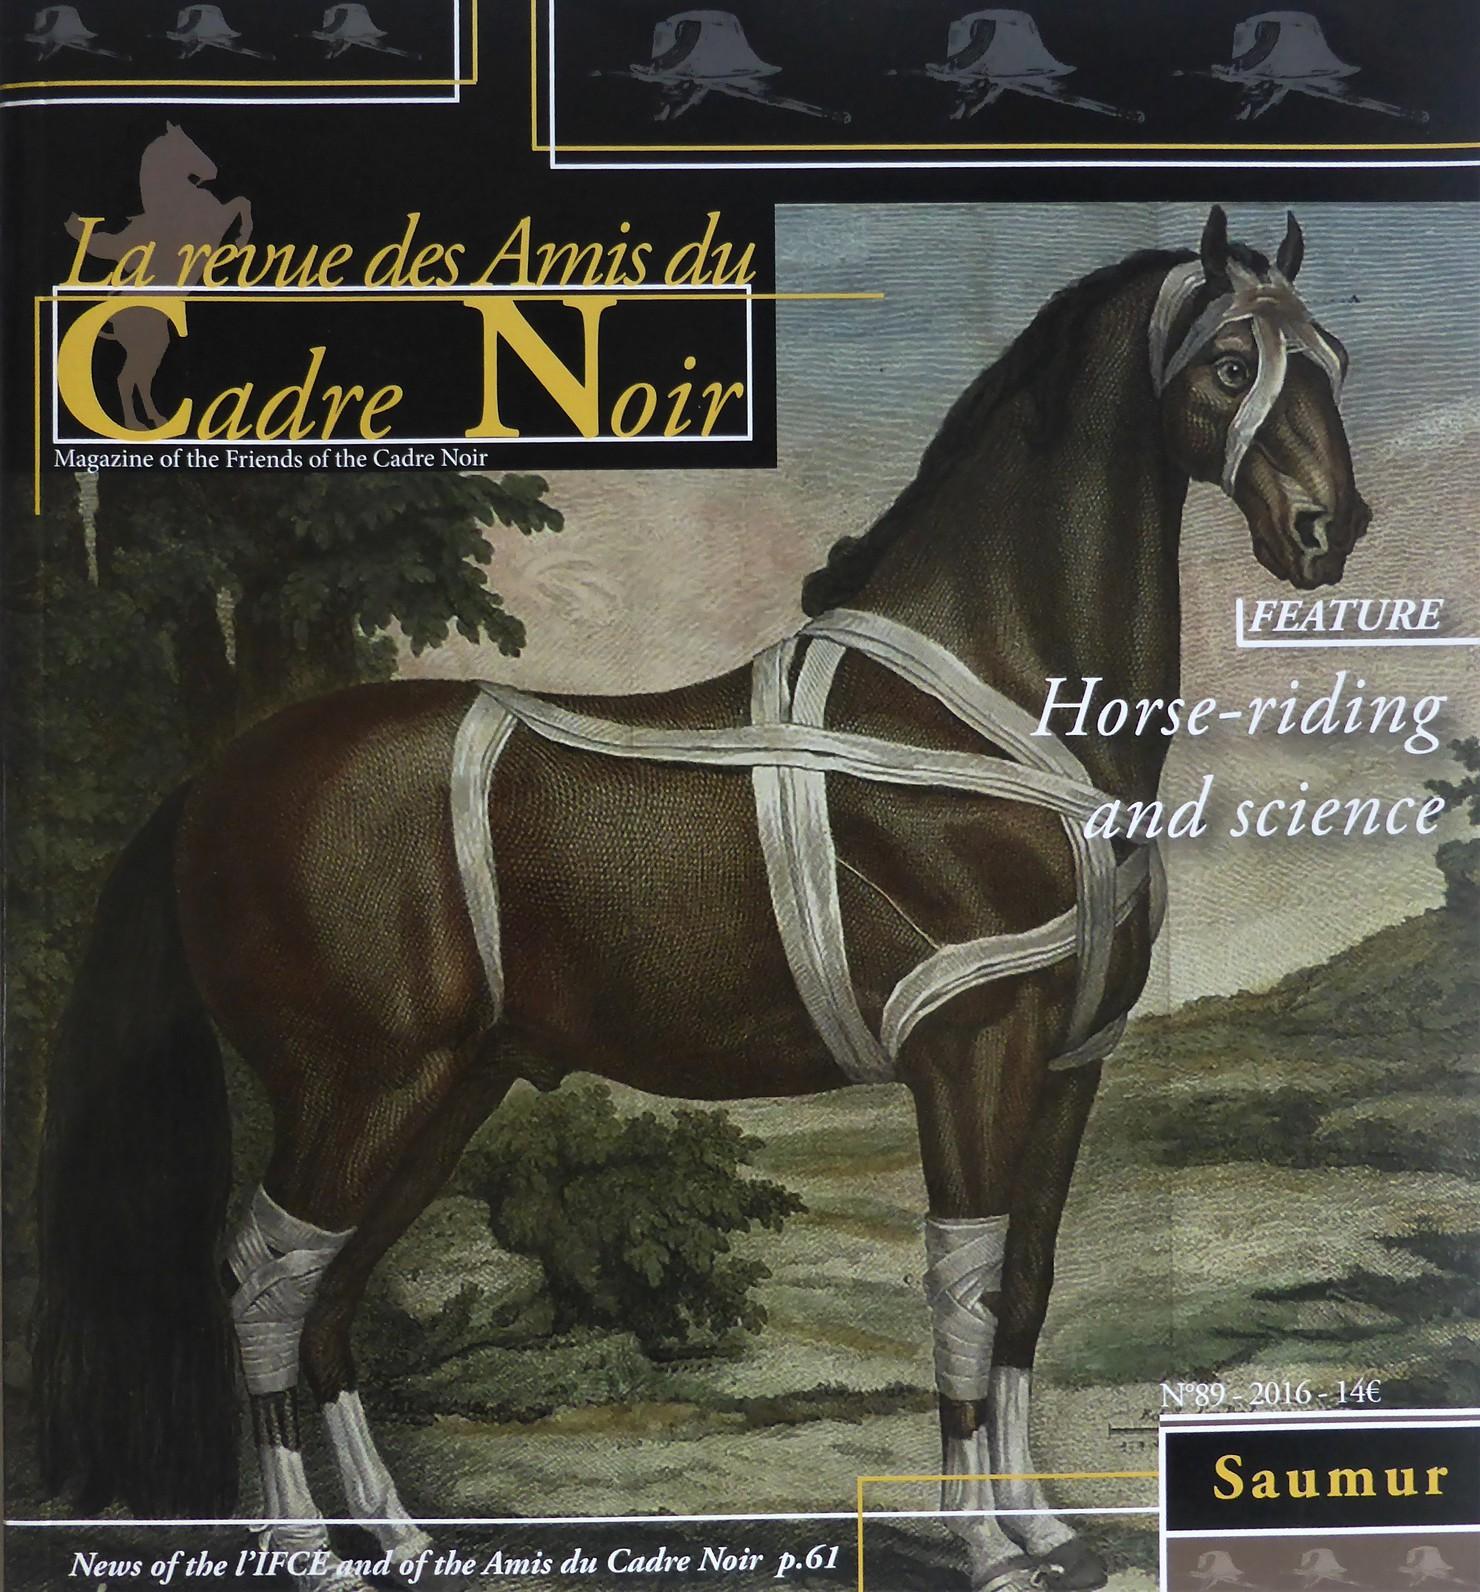 Revue des Amis du Cadre Noir de Saumur, n° 89, 2016, english edition